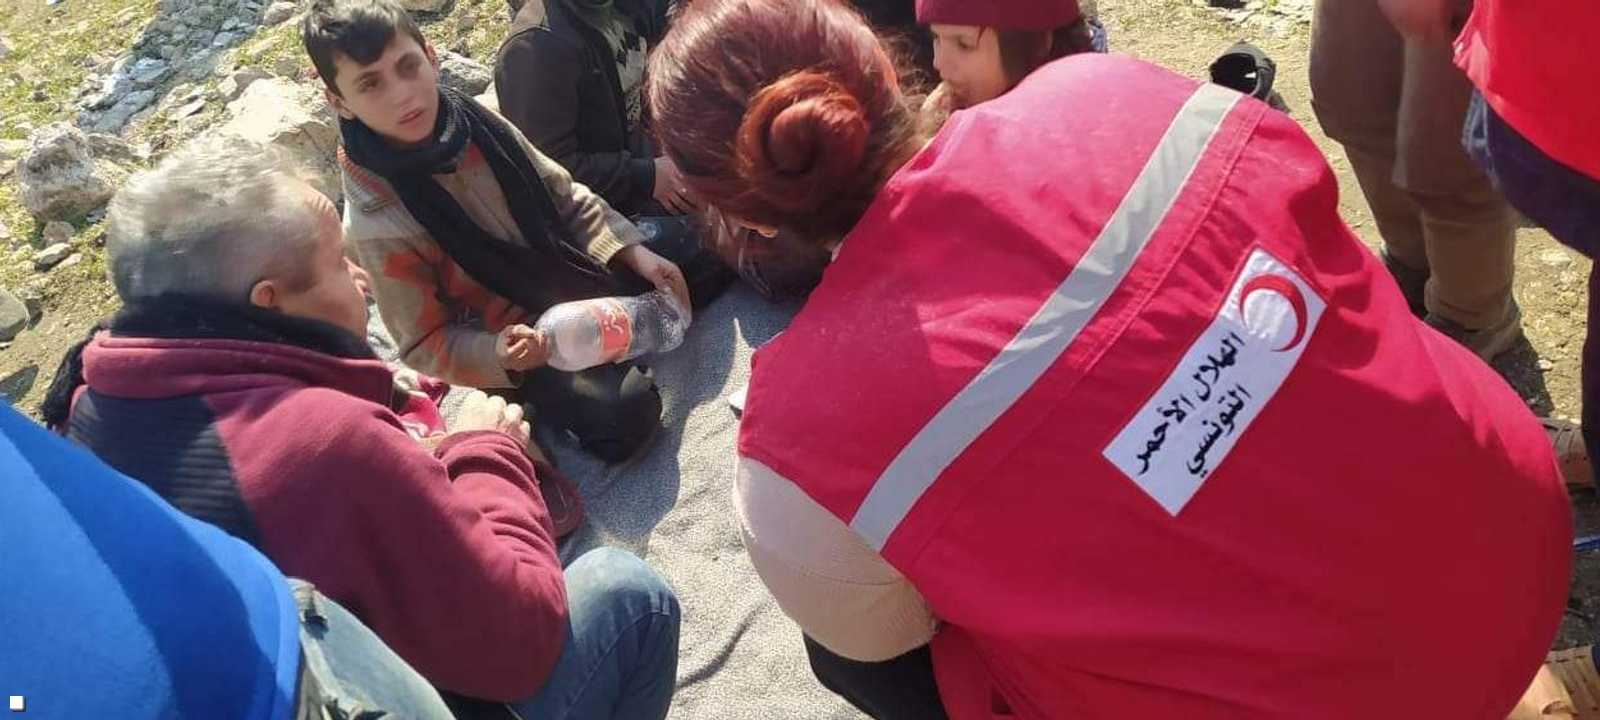 بعثة الإنقاذ التونسية: وقفنا على وضع إنساني صعب ودمار واسع